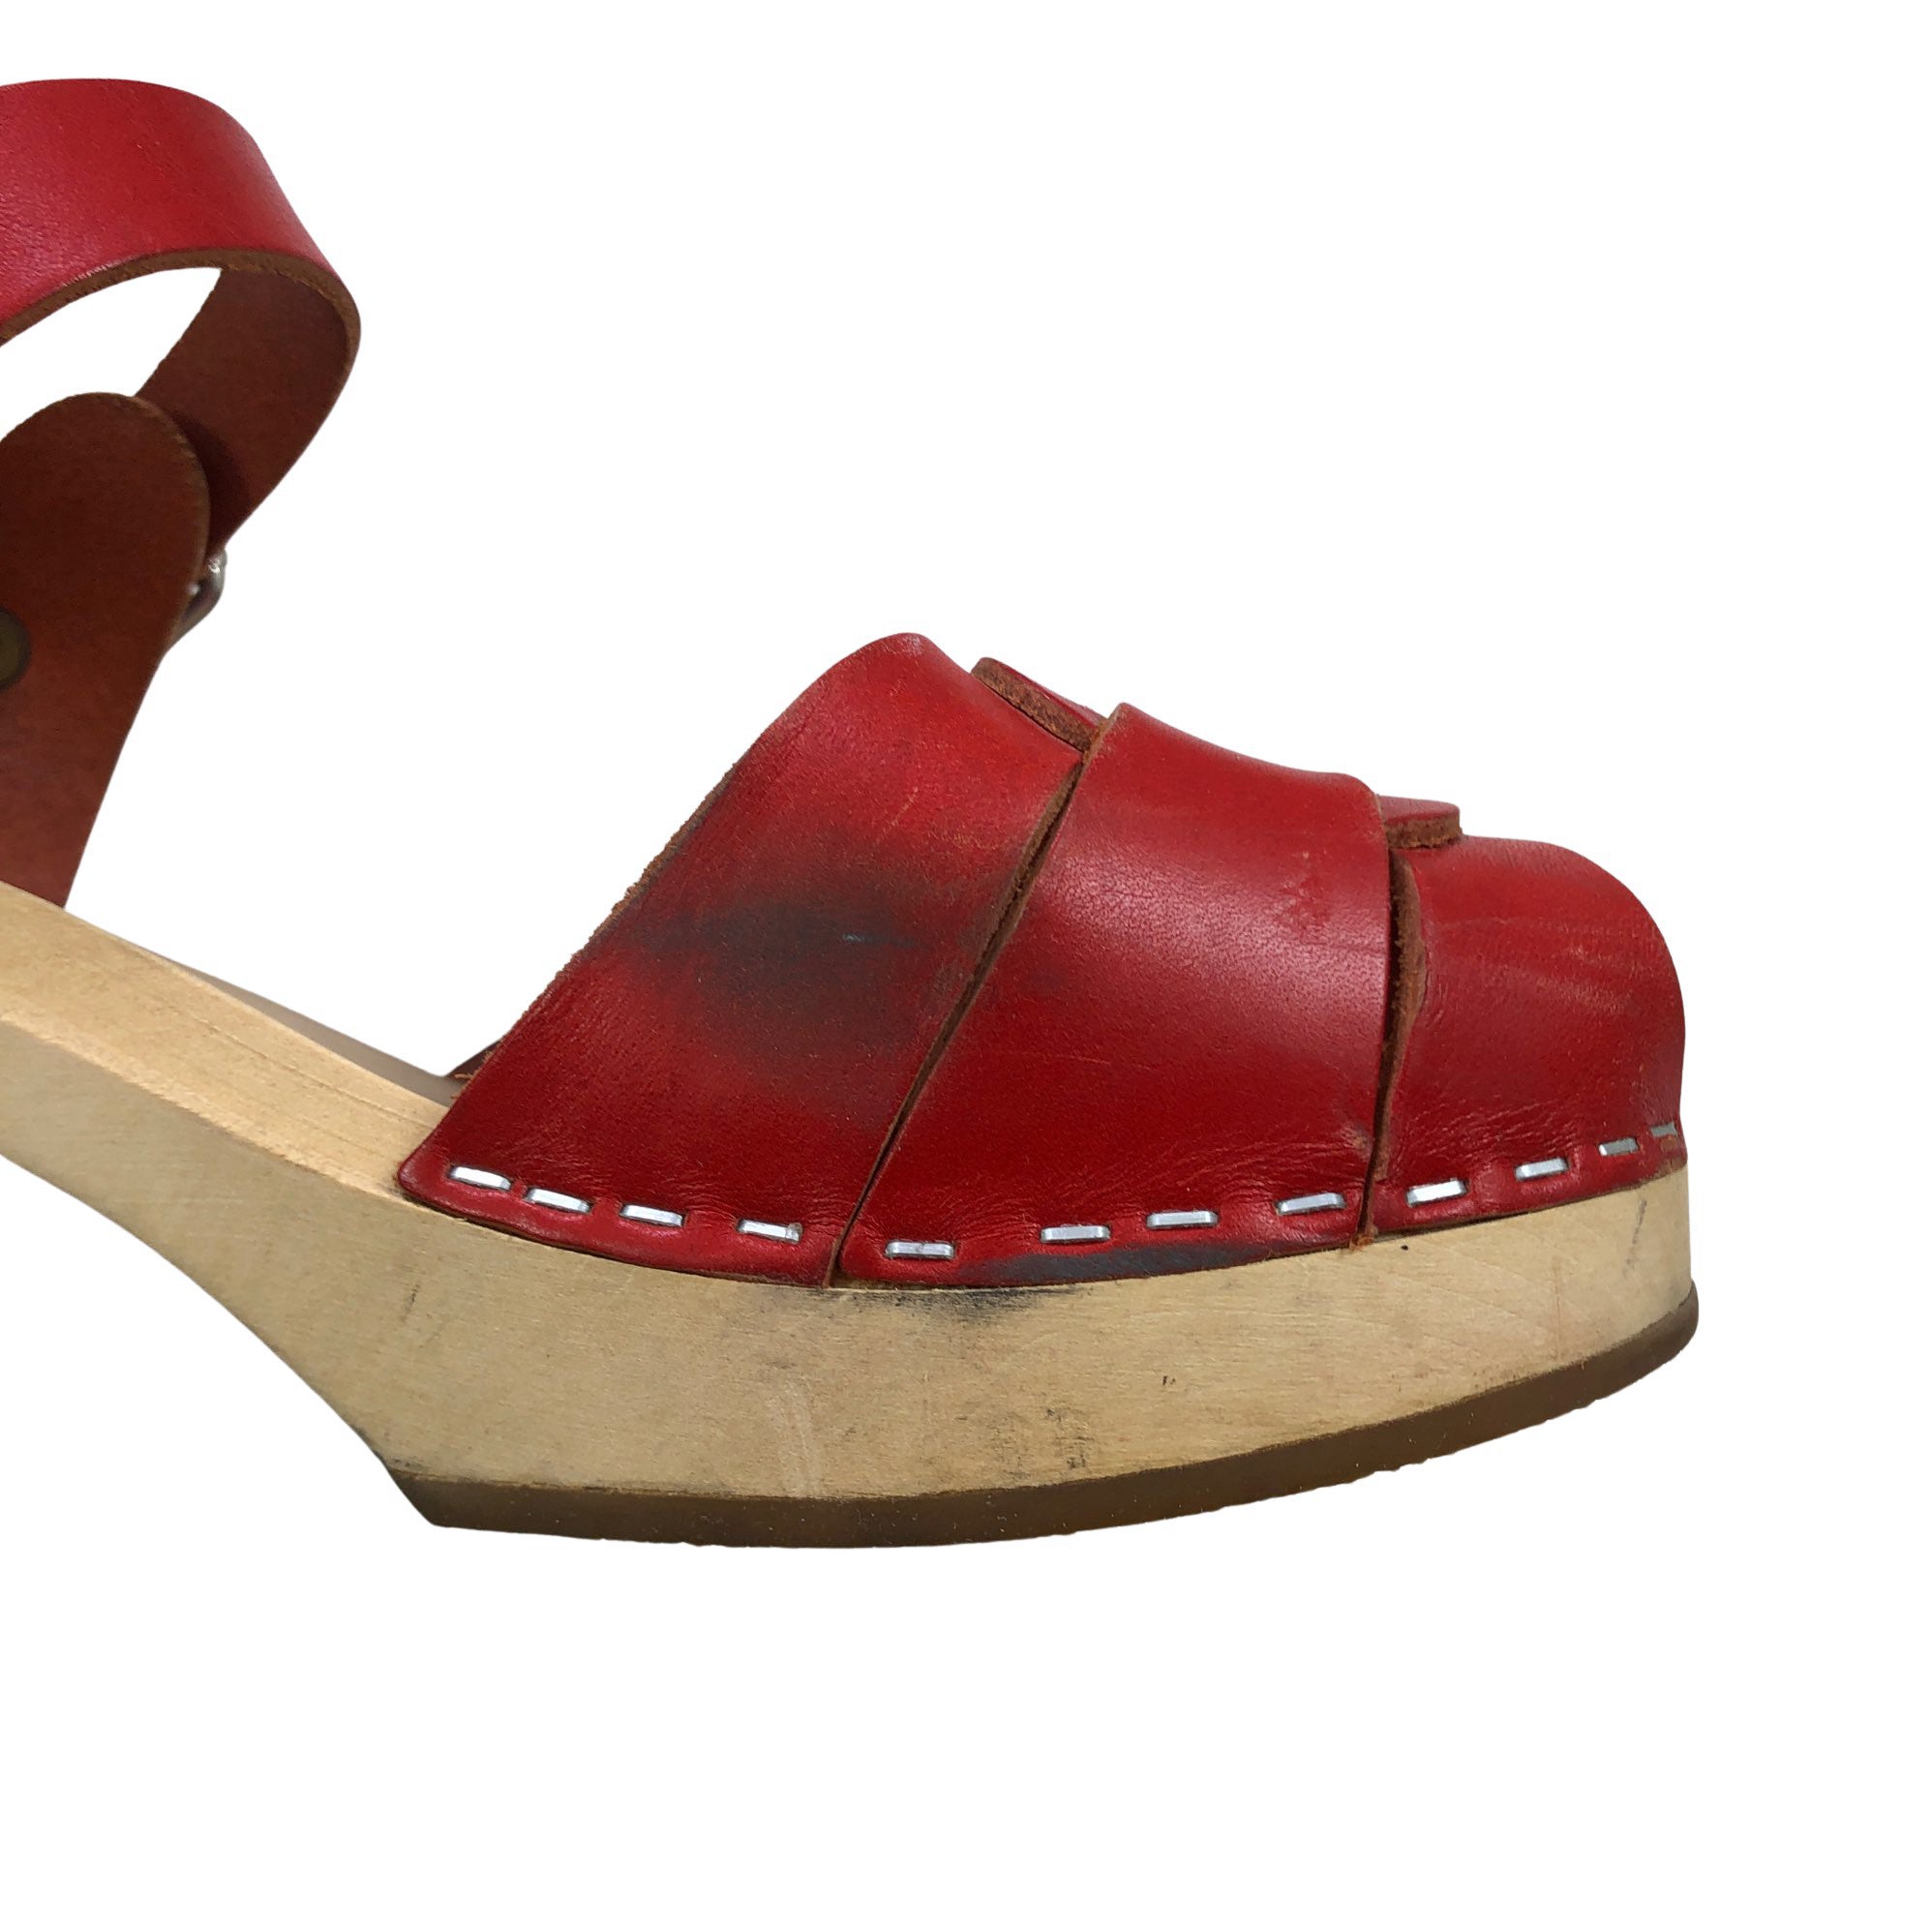 Grusom Taktil sans konvertering Men's Swedish Hasbeens Heeled sandals, size 39 (Red) | Emmy